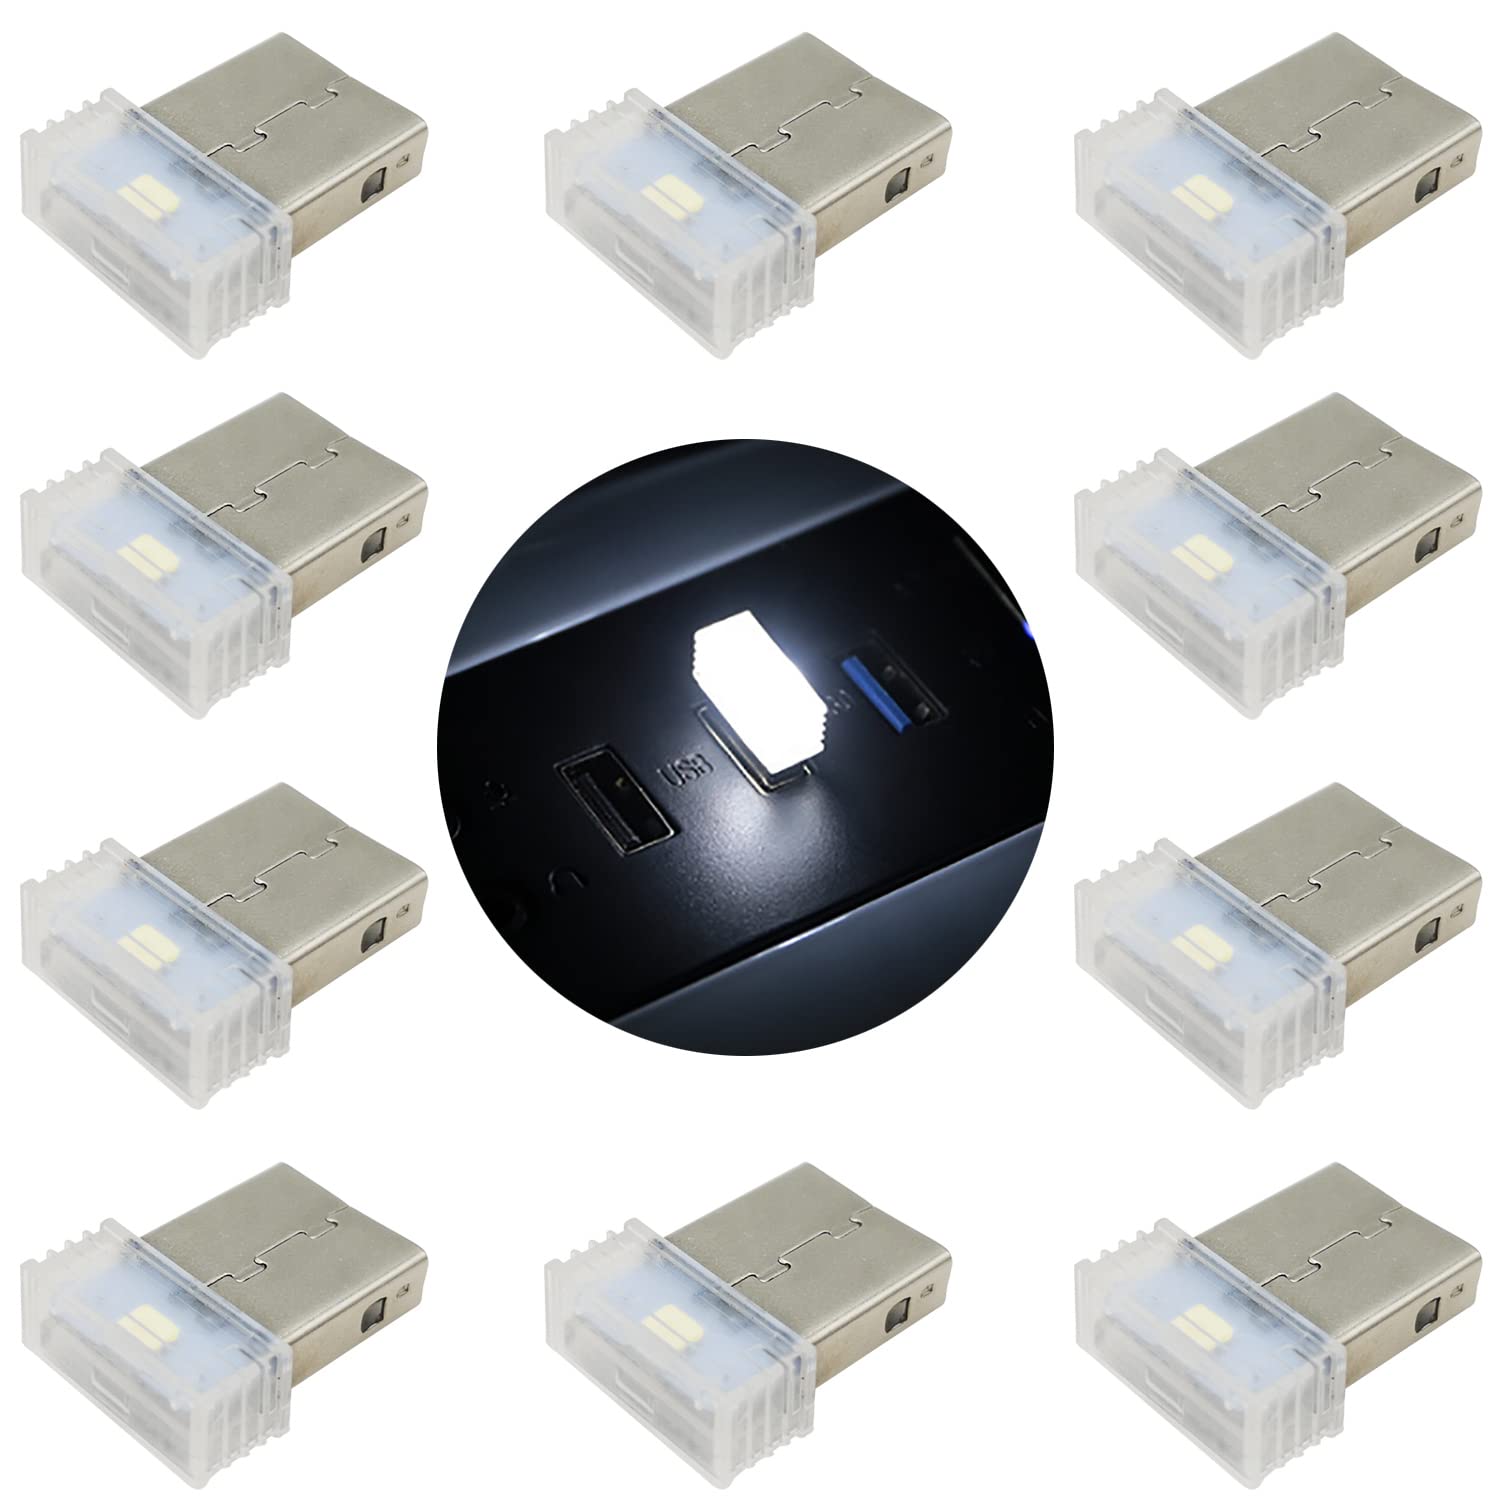 Auto Atmosphäre Licht, USB LED Licht Auto Atmosphäre, Mini Tragbar Atmosphäre Licht,Auto USB Beleuchtung, Mini USB Light Car (Weiss) von CTRICALVER